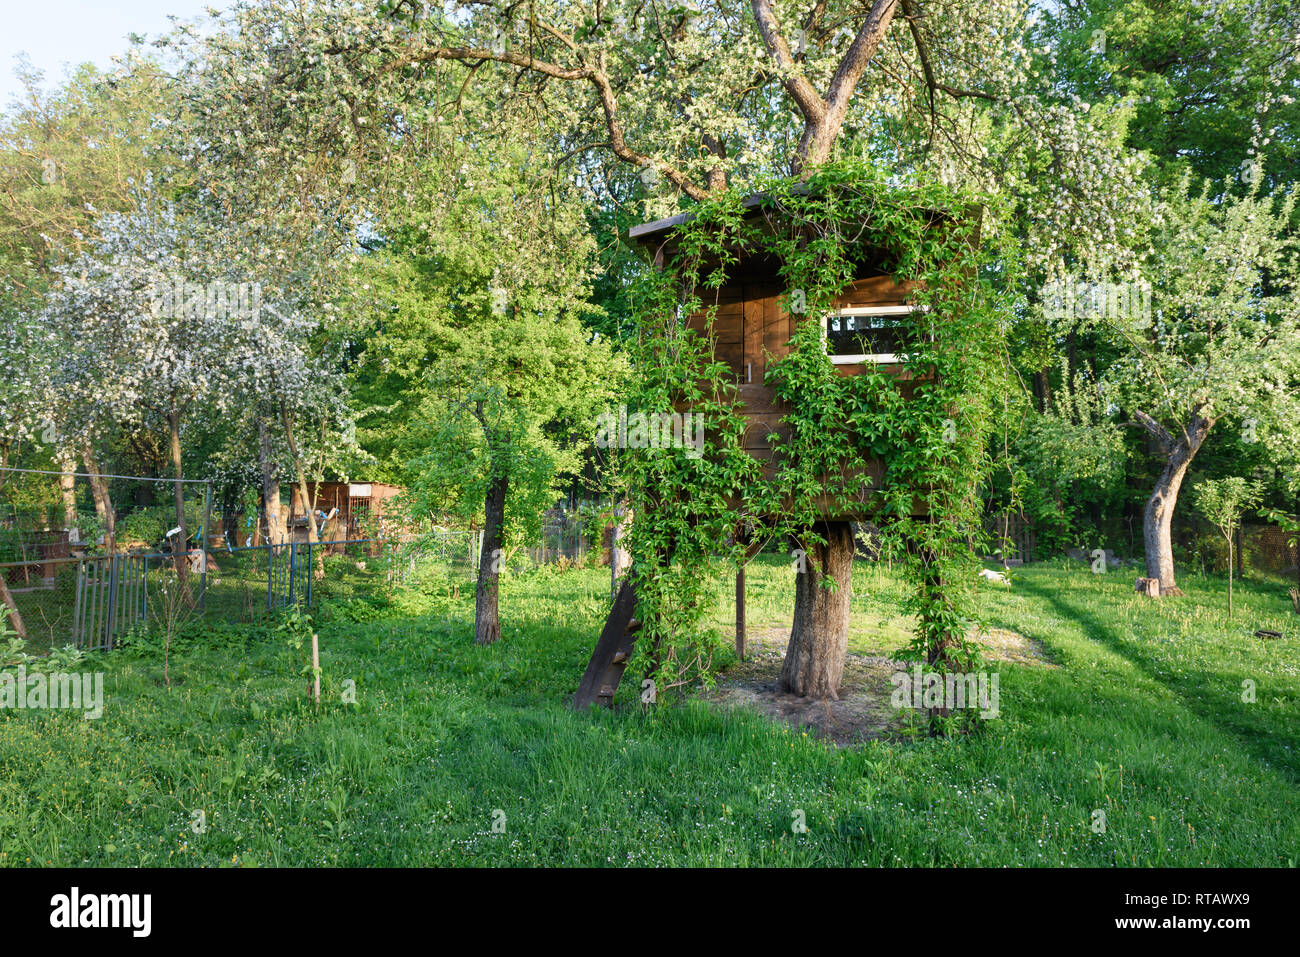 Haus auf Baum im grünen Frühling Garten Stockfoto